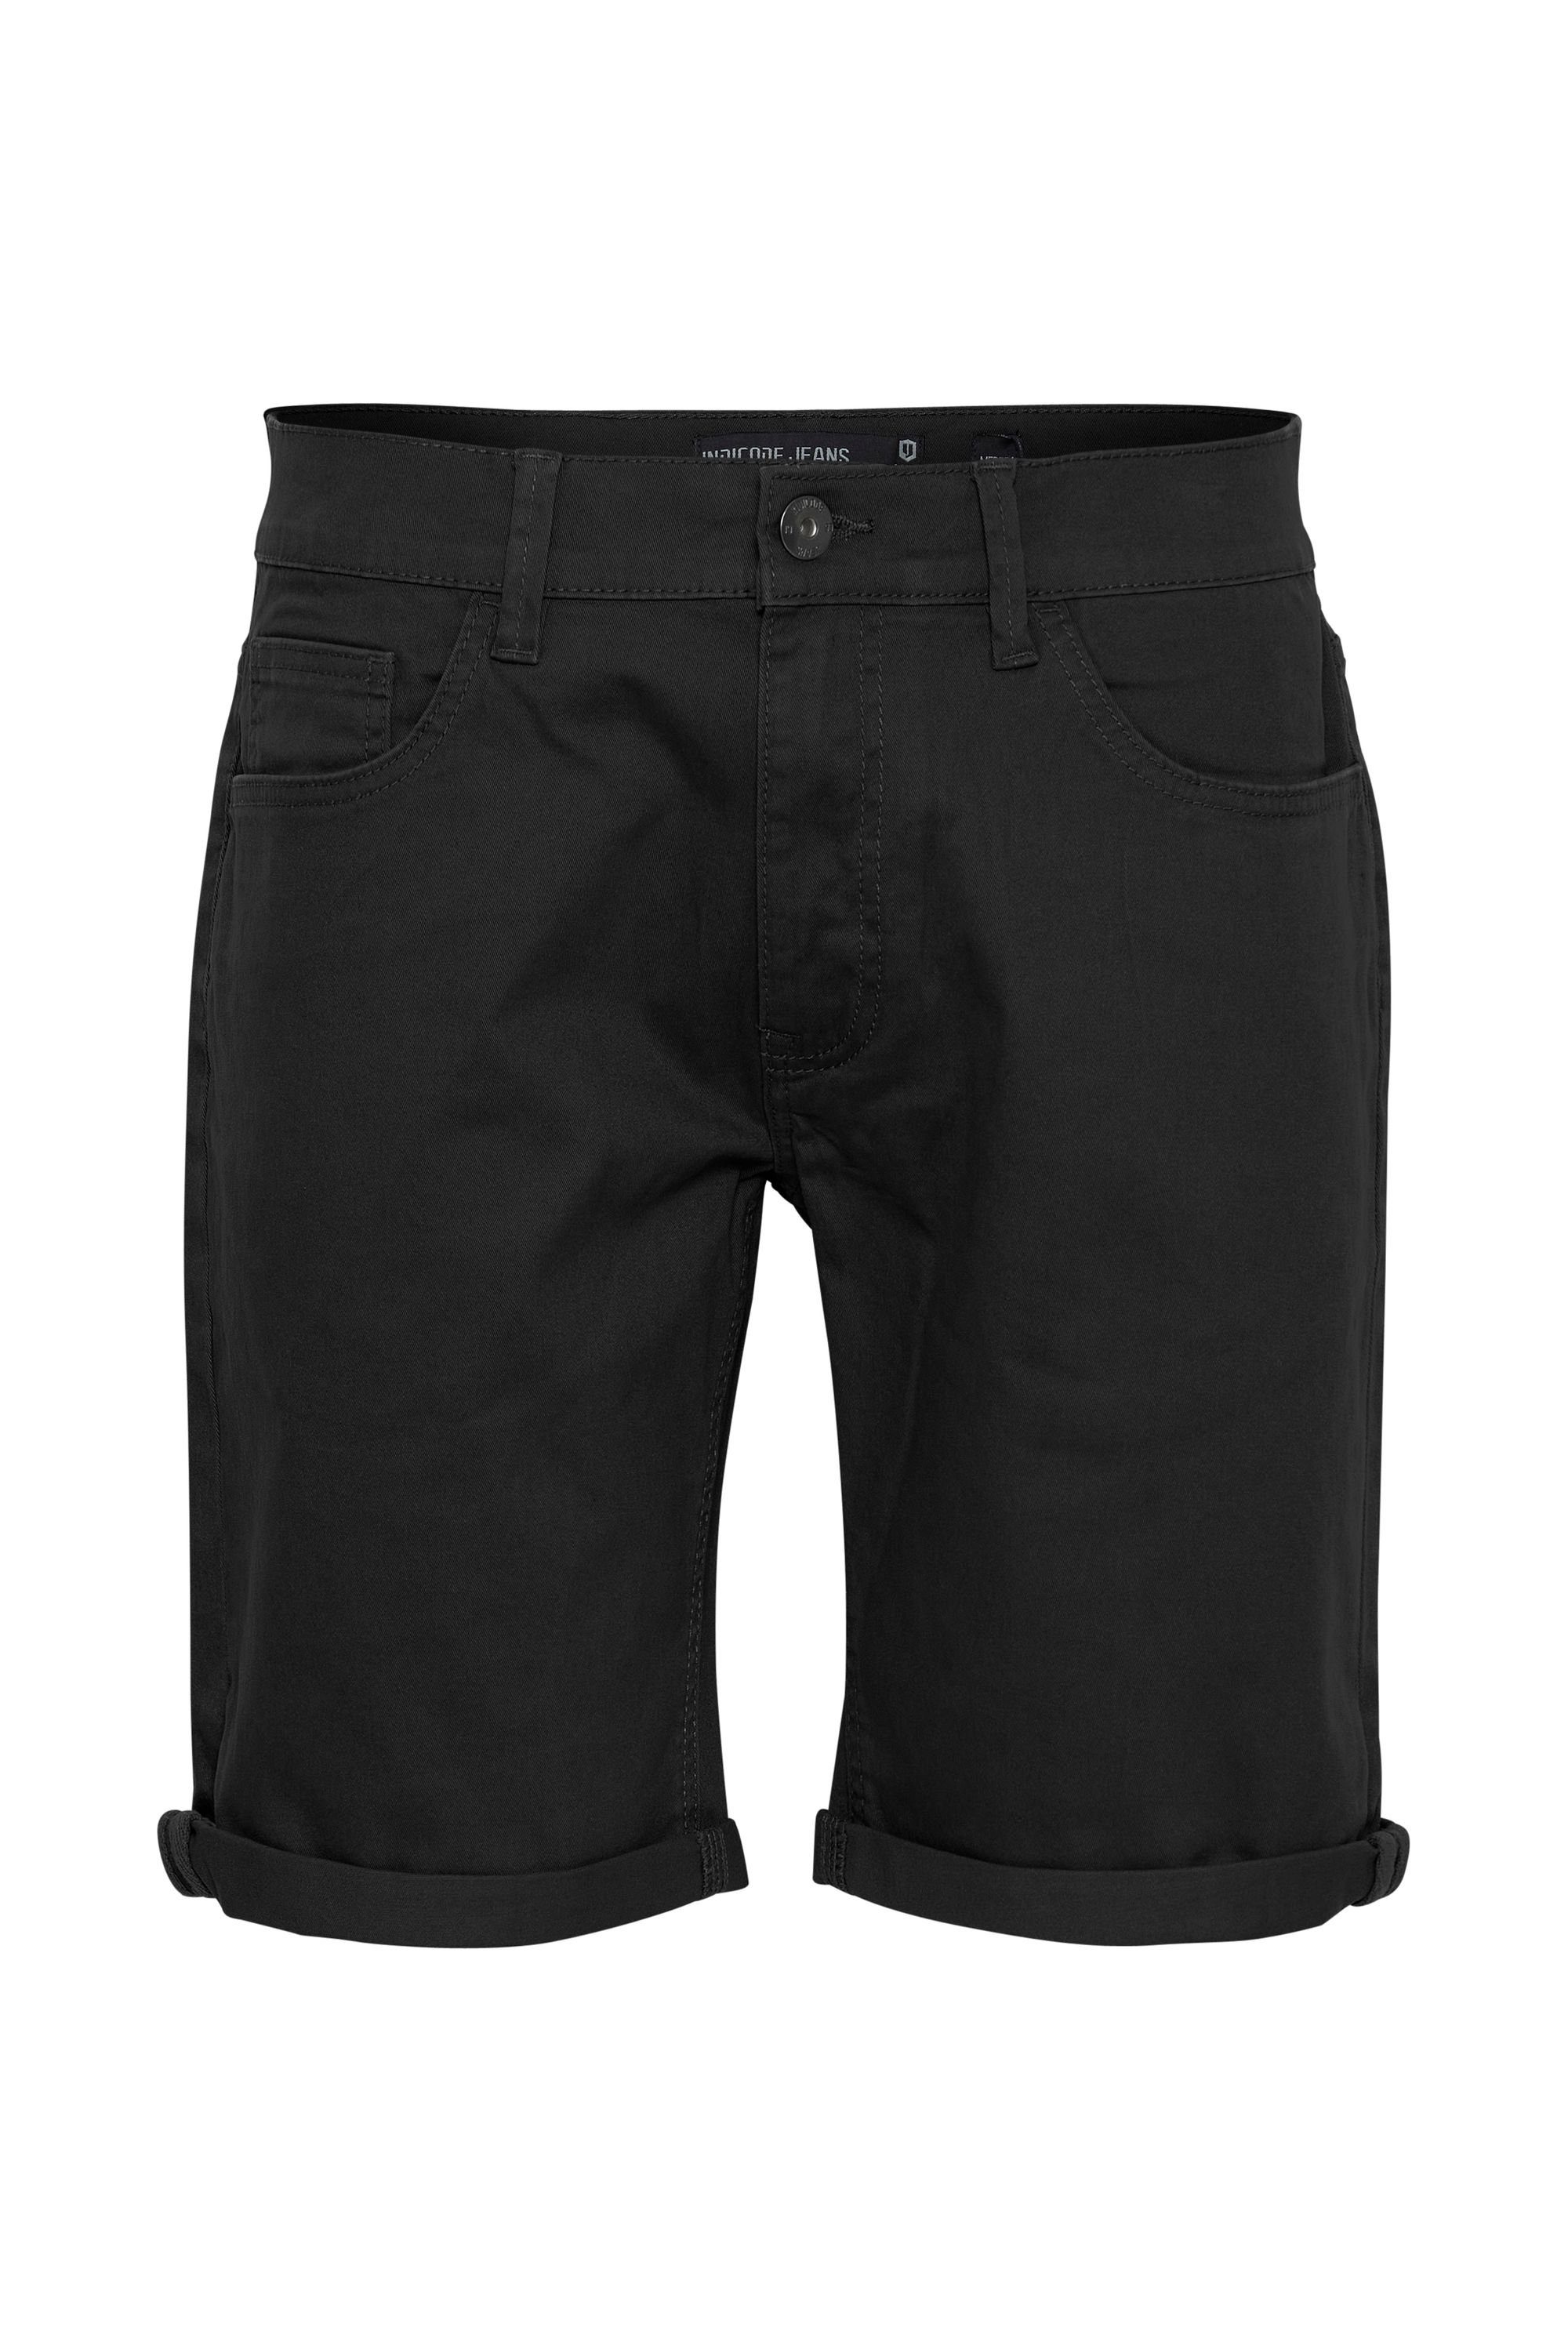 (999) Black Indicode IDPokka Shorts